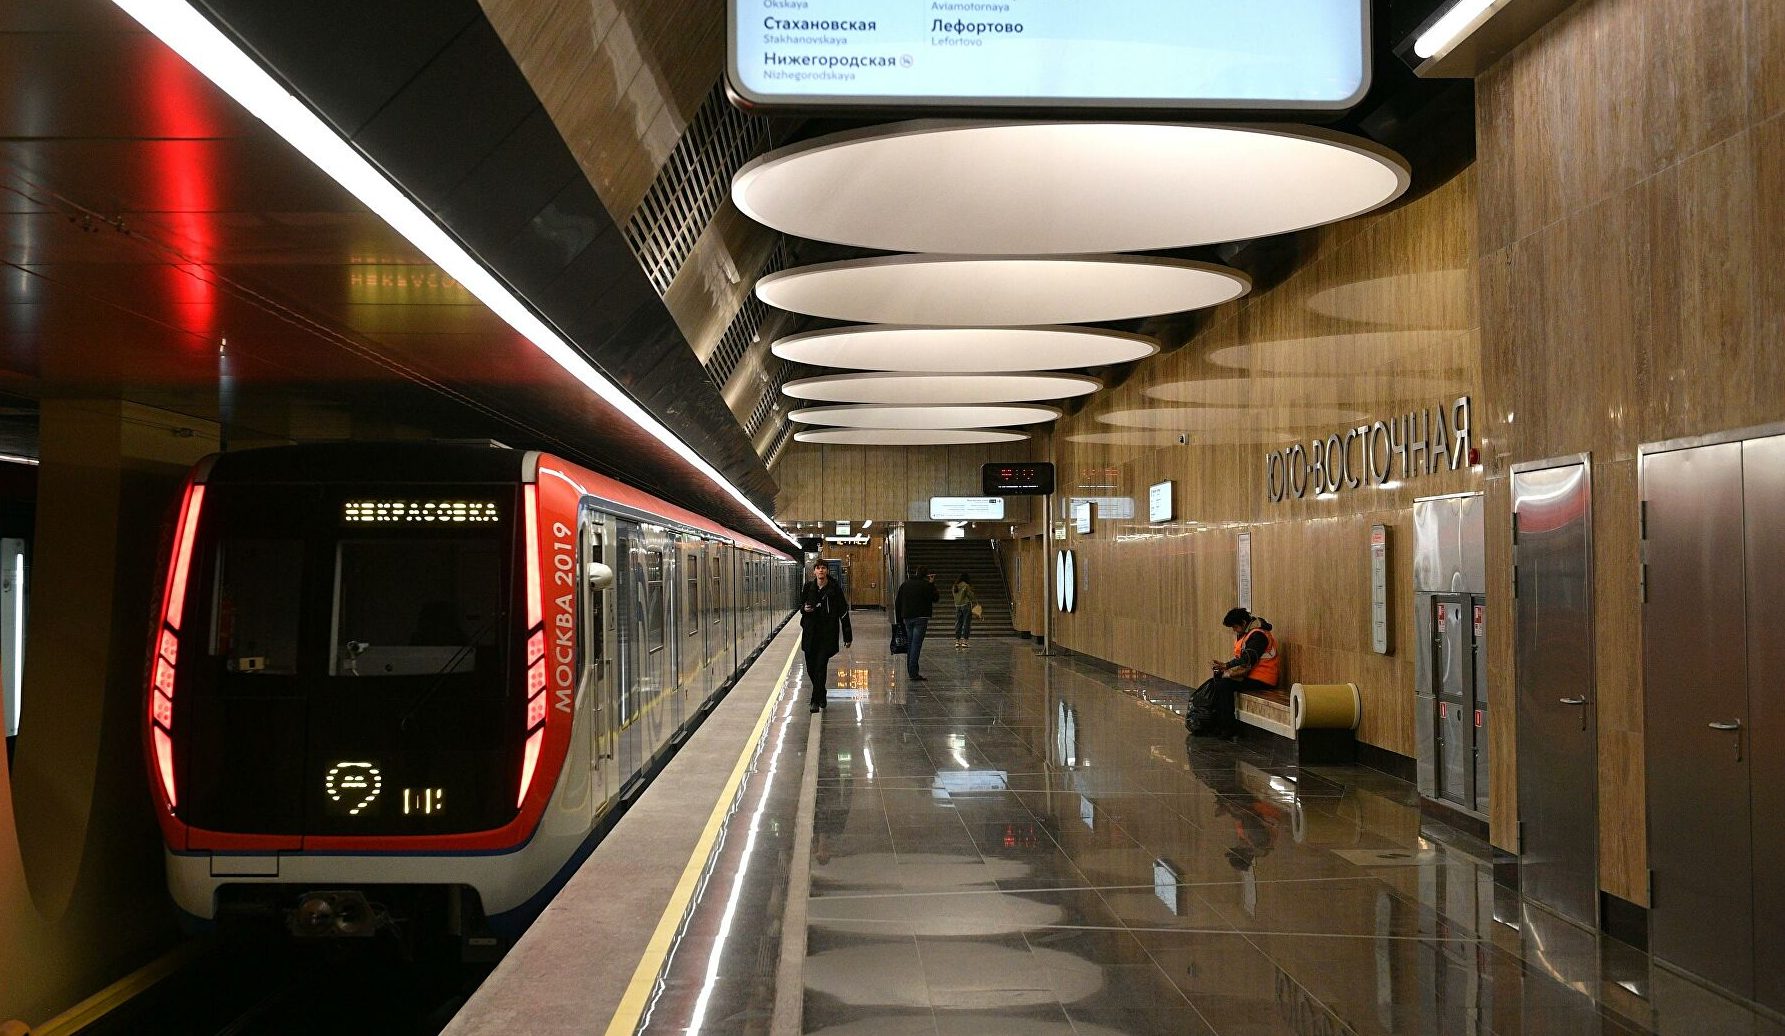 Как пользоваться схемой метро в праге и сколько стоит проезд?